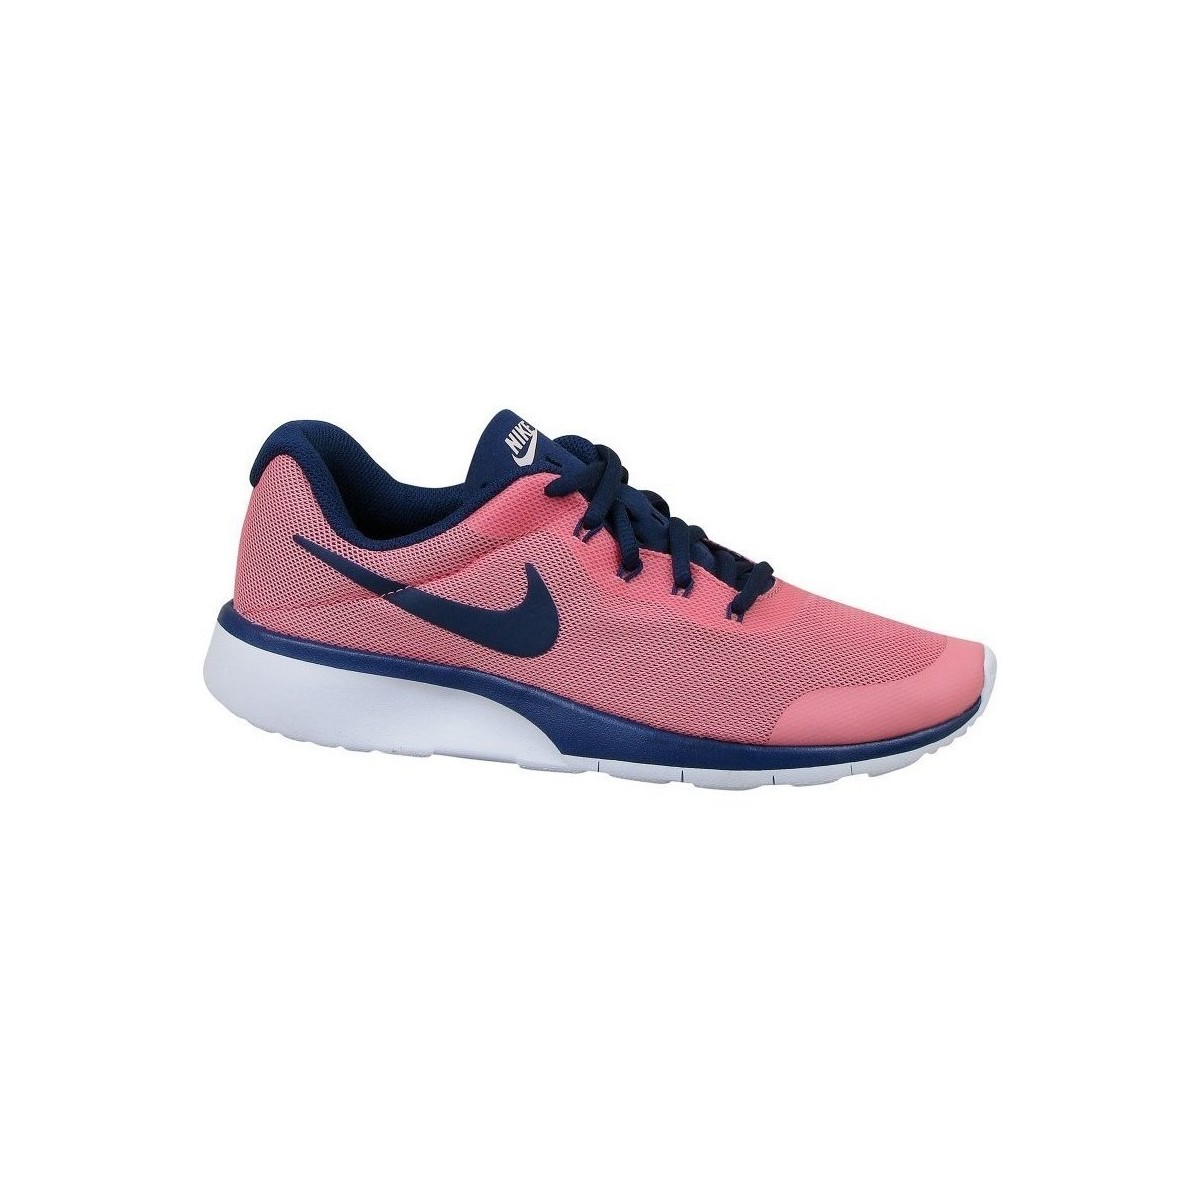 kengät Lapset Matalavartiset tennarit Nike Tanjun Racer GS Vaaleanpunainen